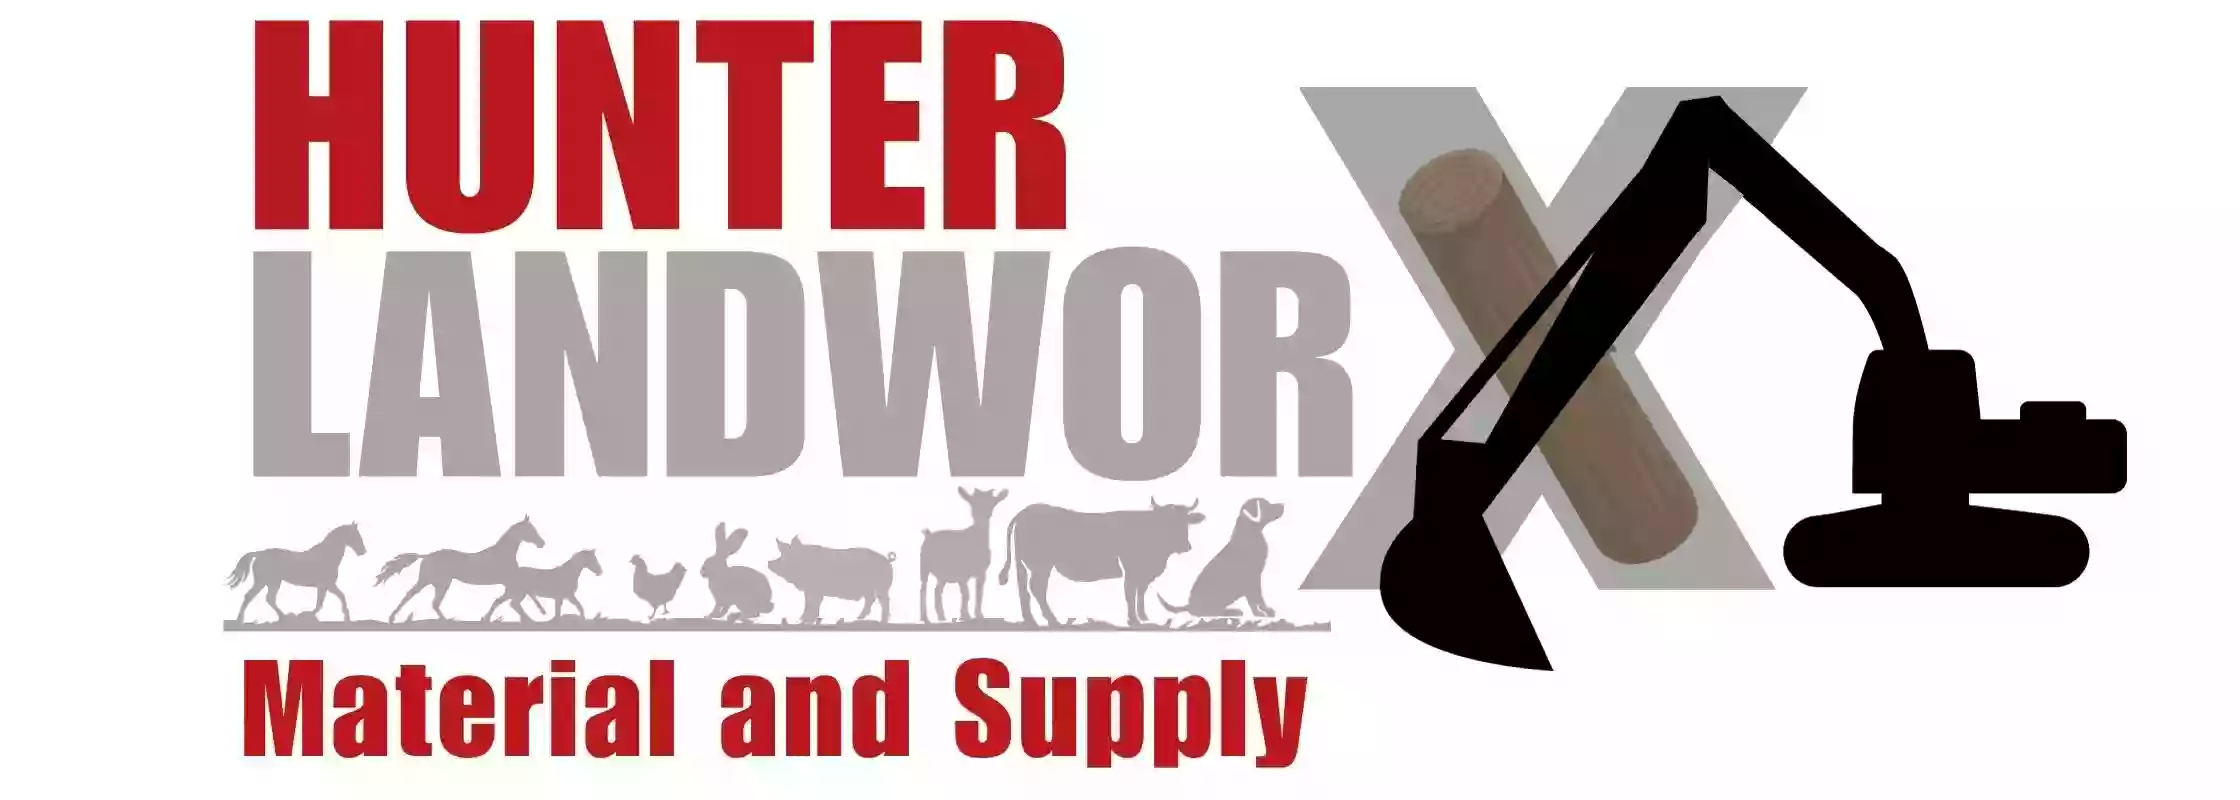 Hunter Landworx Supply & Material LLC.